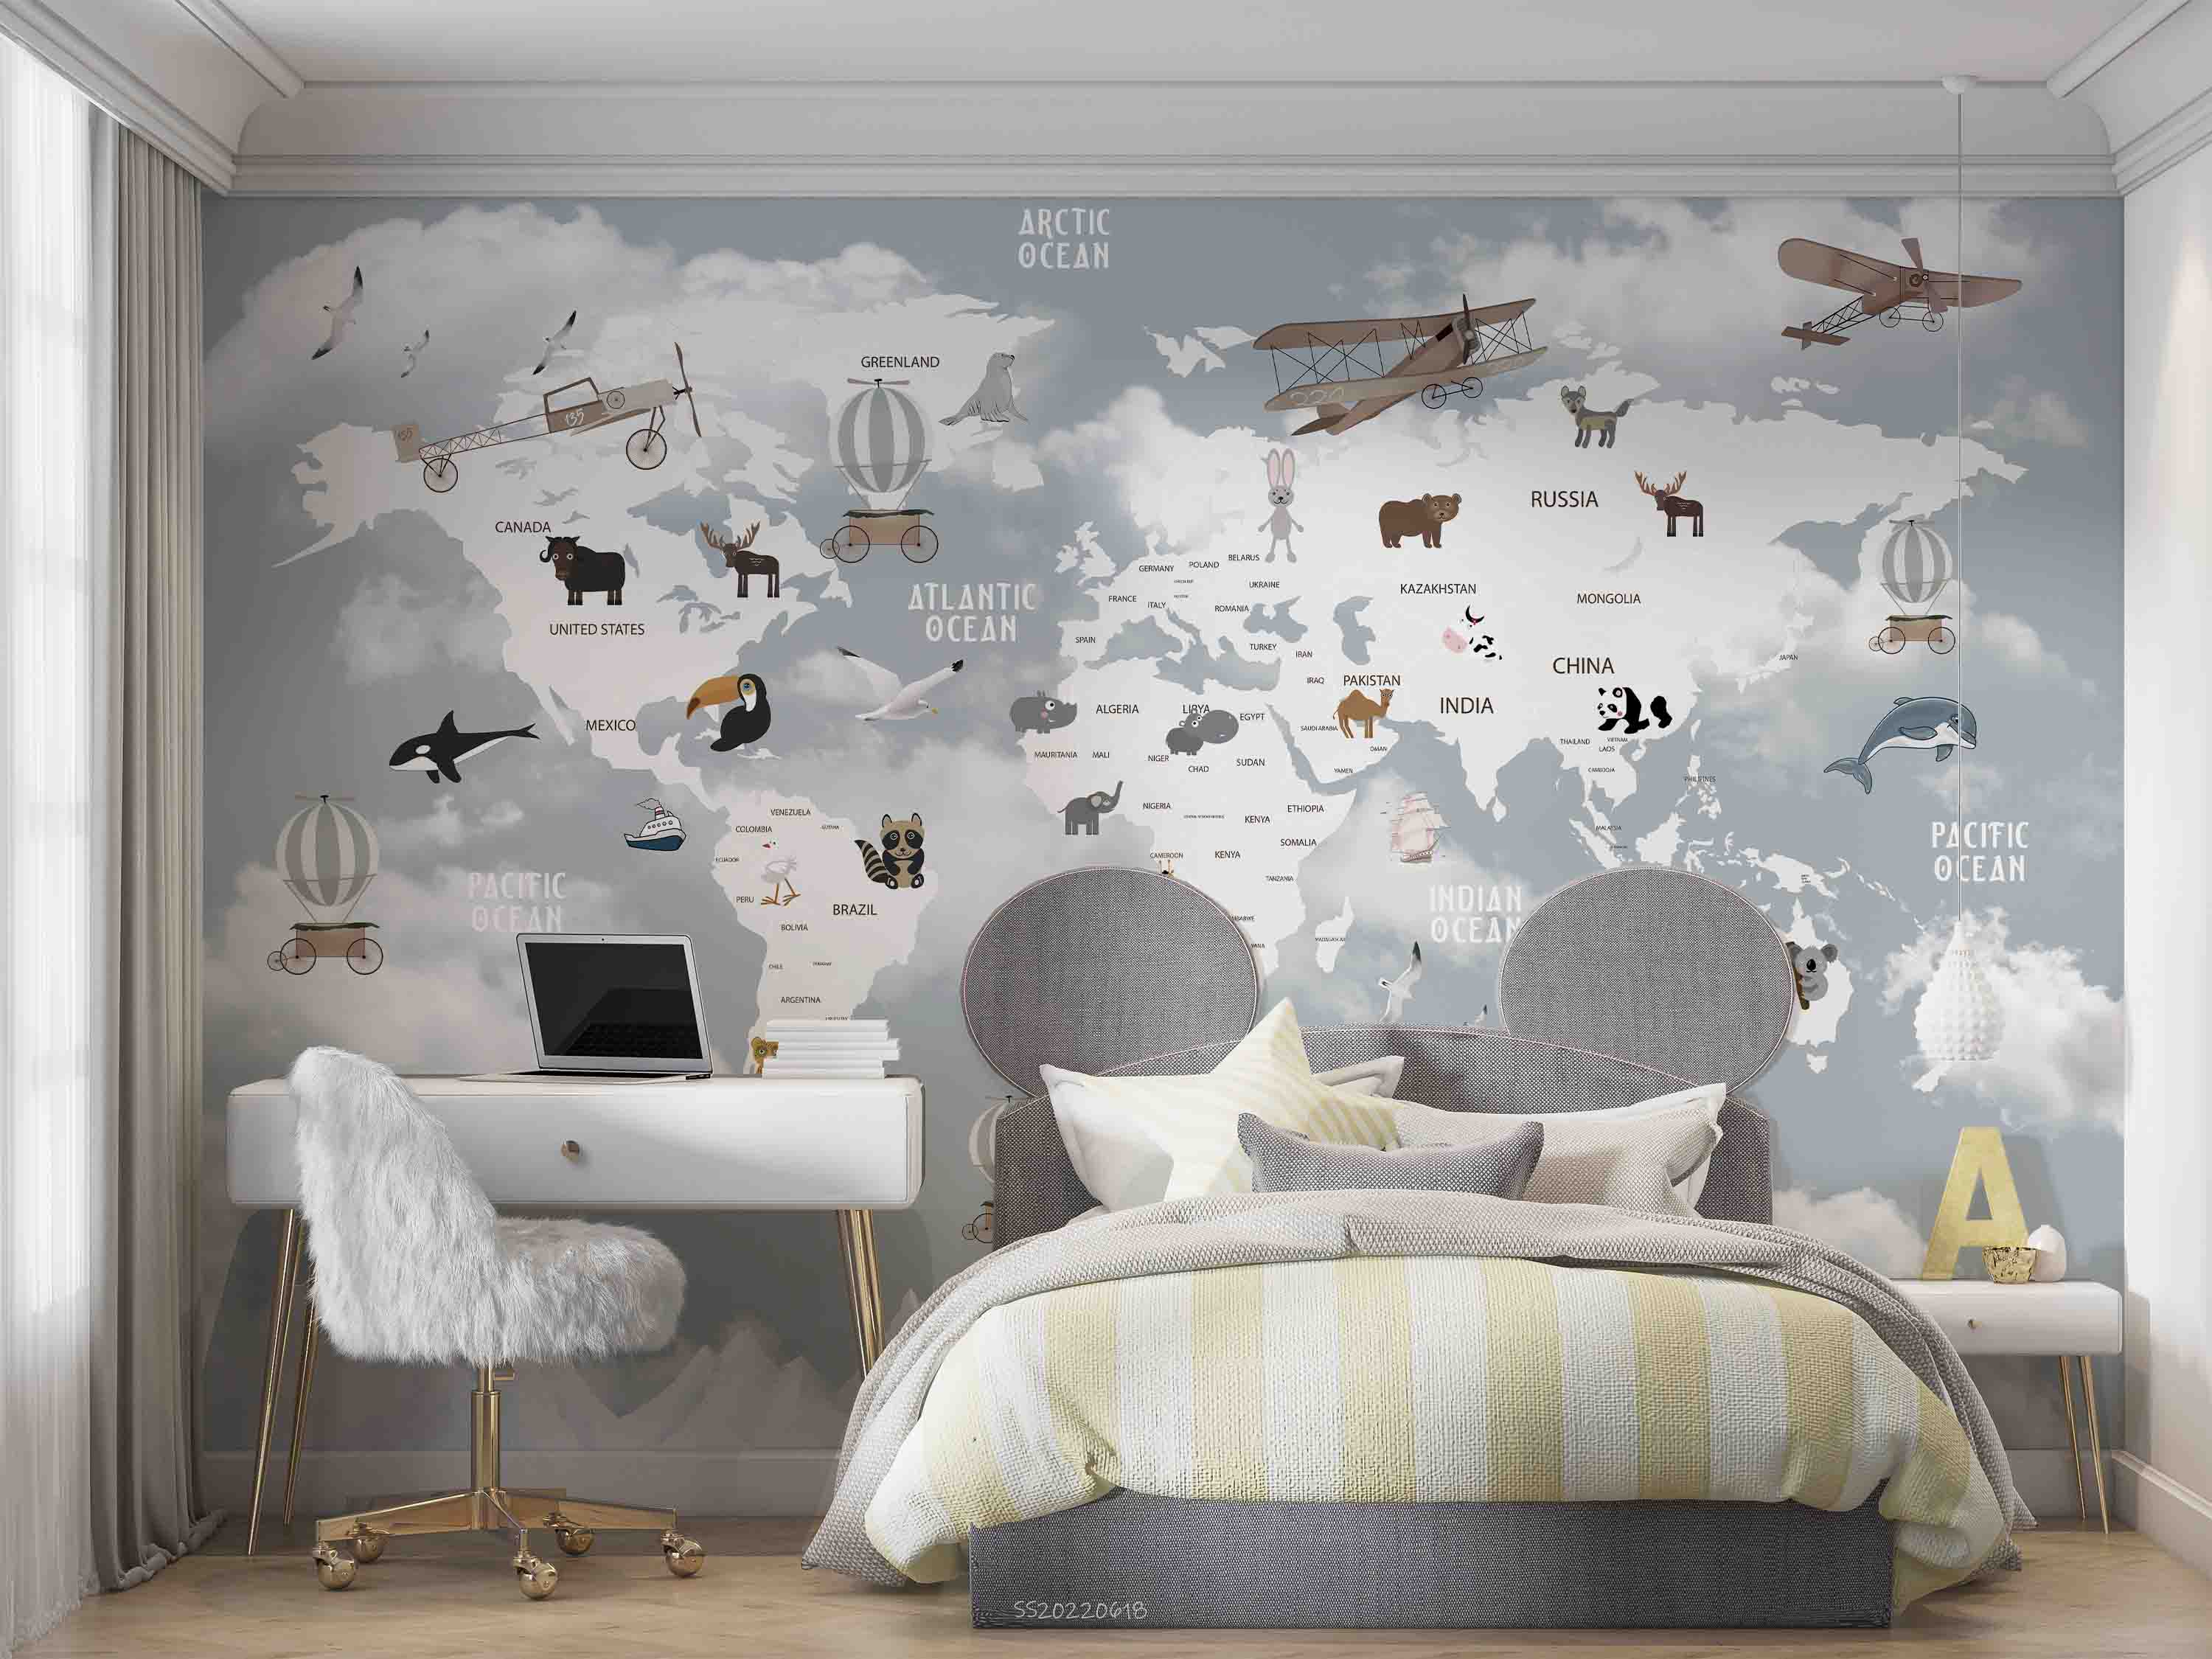 3D World Map Cartoon Animal Aircraft Wall Mural Wallpaper GD 862- Jess Art Decoration